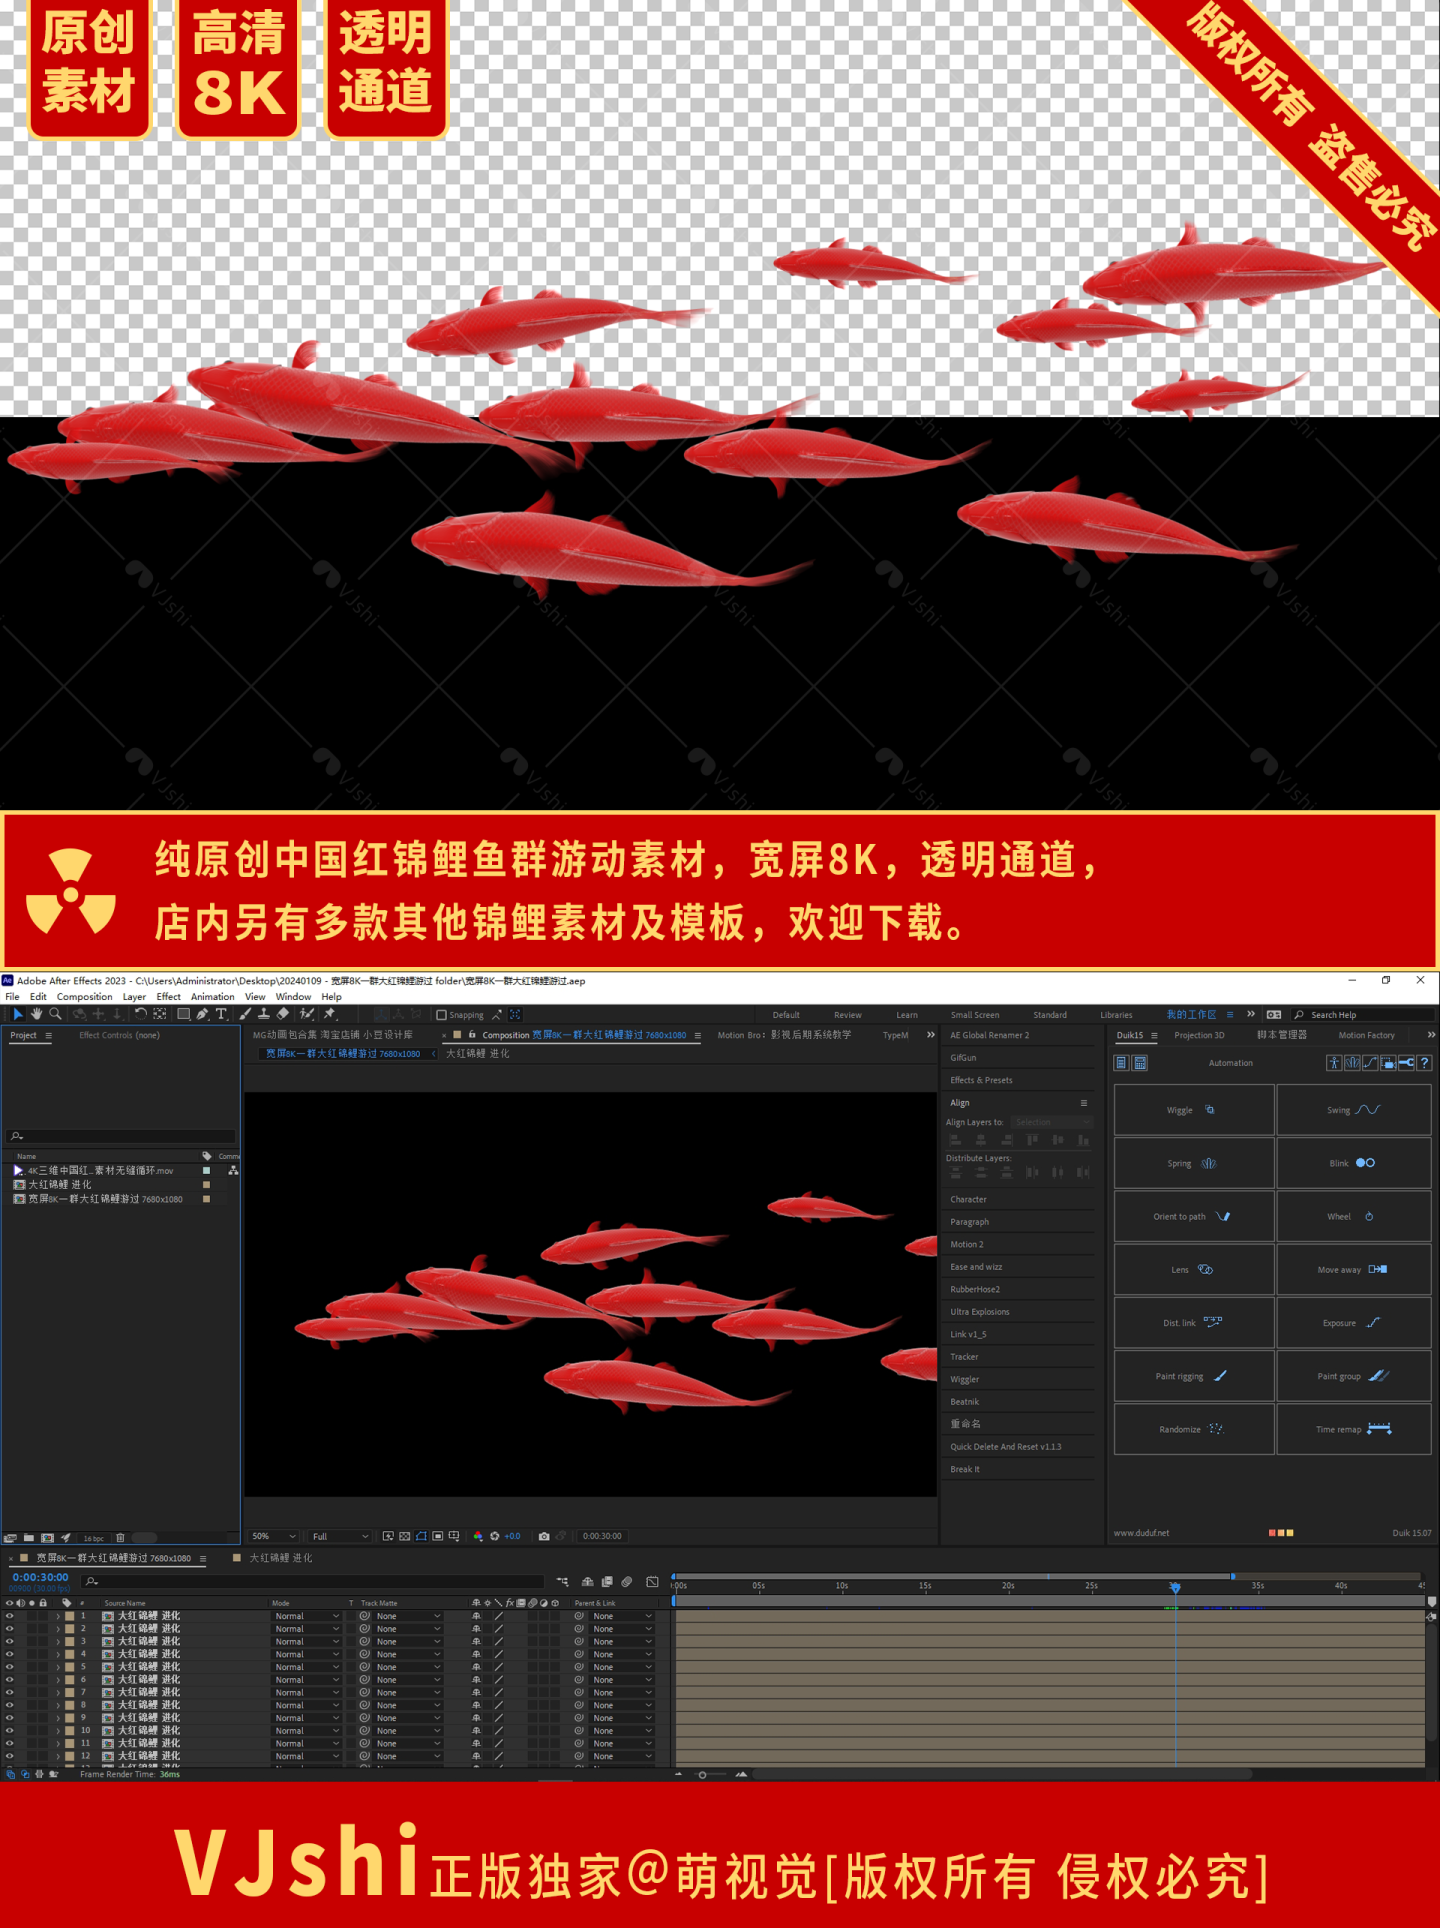 宽屏8K大红锦鲤鱼群游过素材